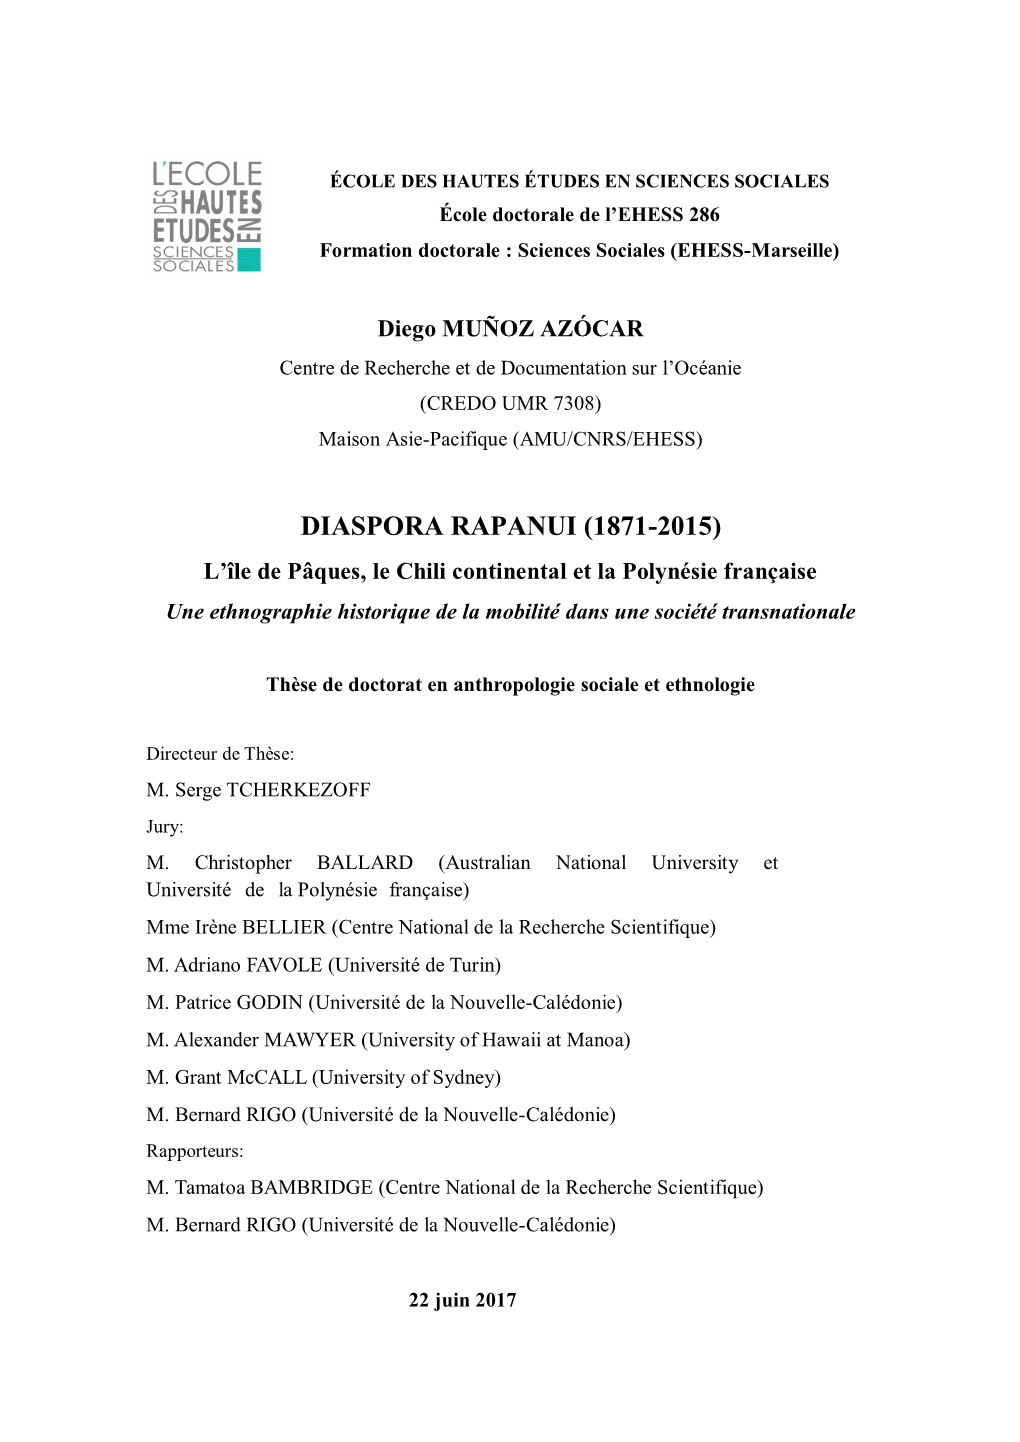 Diaspora Rapanui (1871-2015) L'île De Pâques, Le Chili Continental Et La Polynésie Française. Une Ethnographie Historiqu